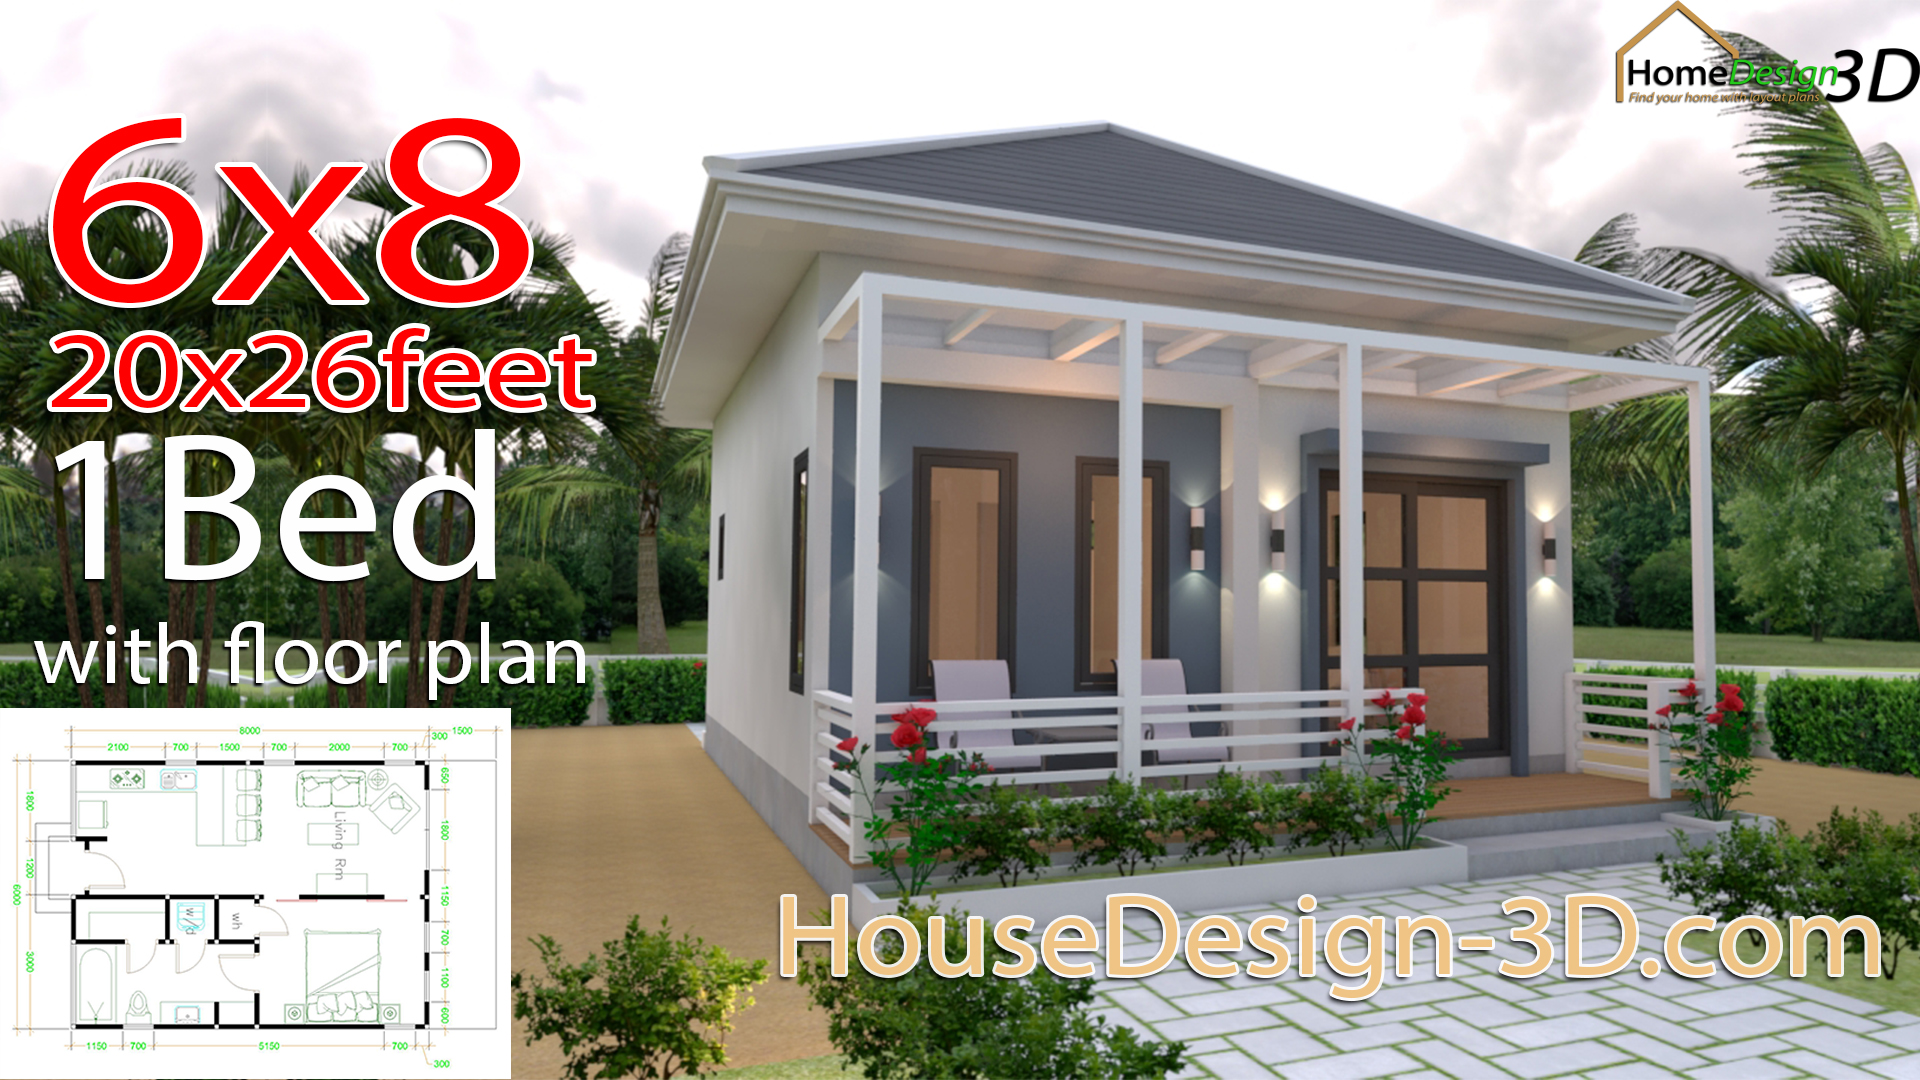 Studio House Plans 6x8 Hip Roof - House Design 3D